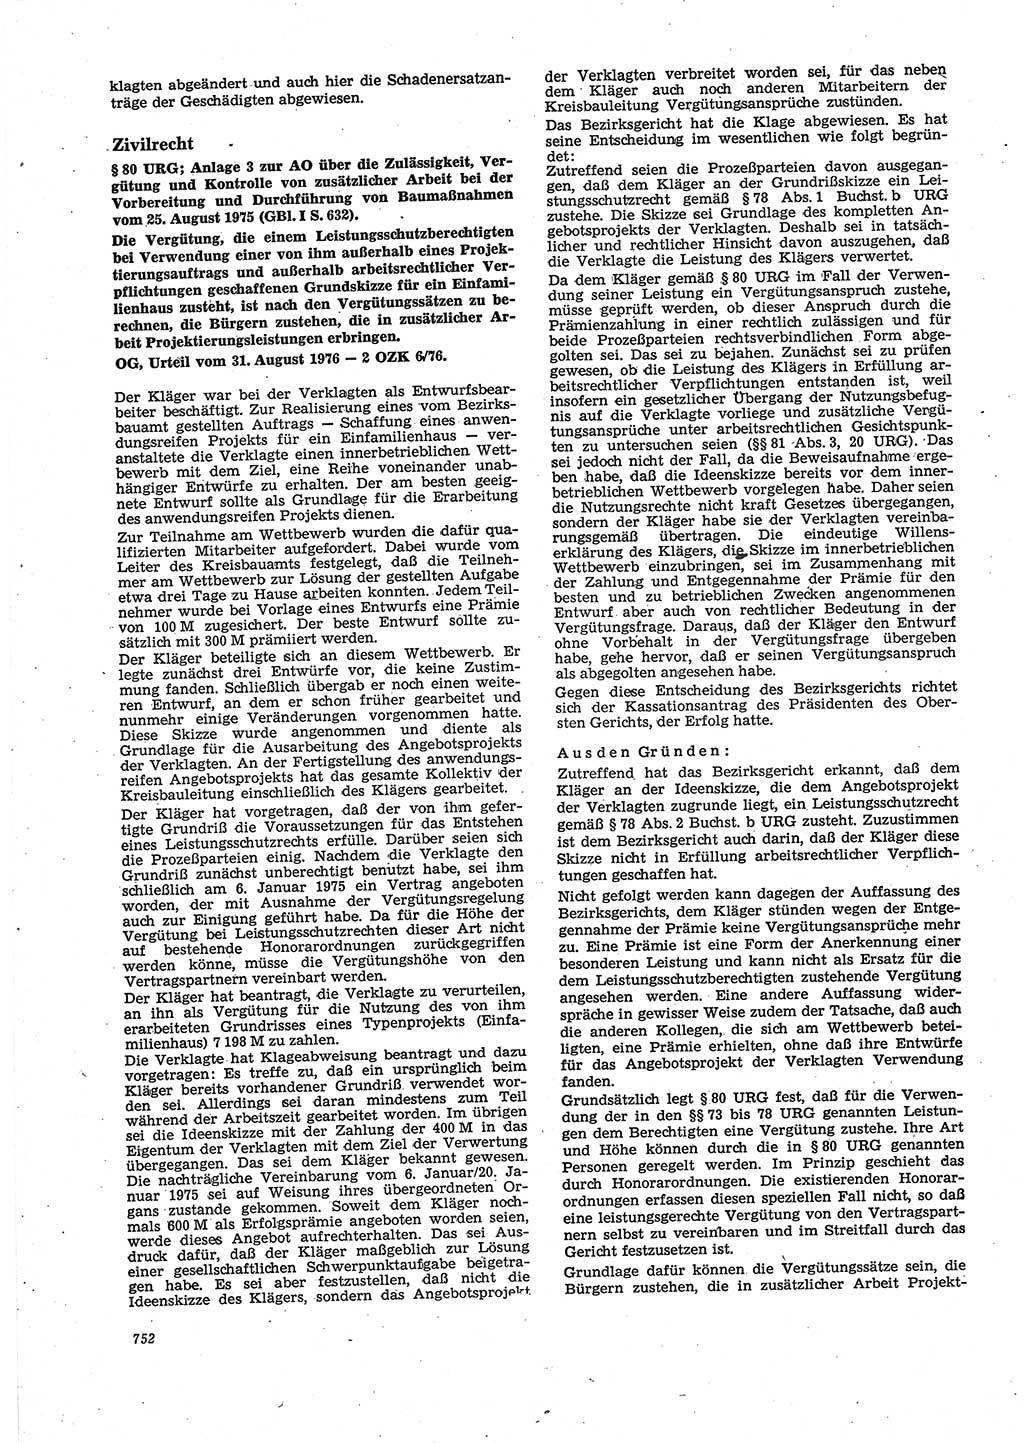 Neue Justiz (NJ), Zeitschrift für Recht und Rechtswissenschaft [Deutsche Demokratische Republik (DDR)], 30. Jahrgang 1976, Seite 752 (NJ DDR 1976, S. 752)